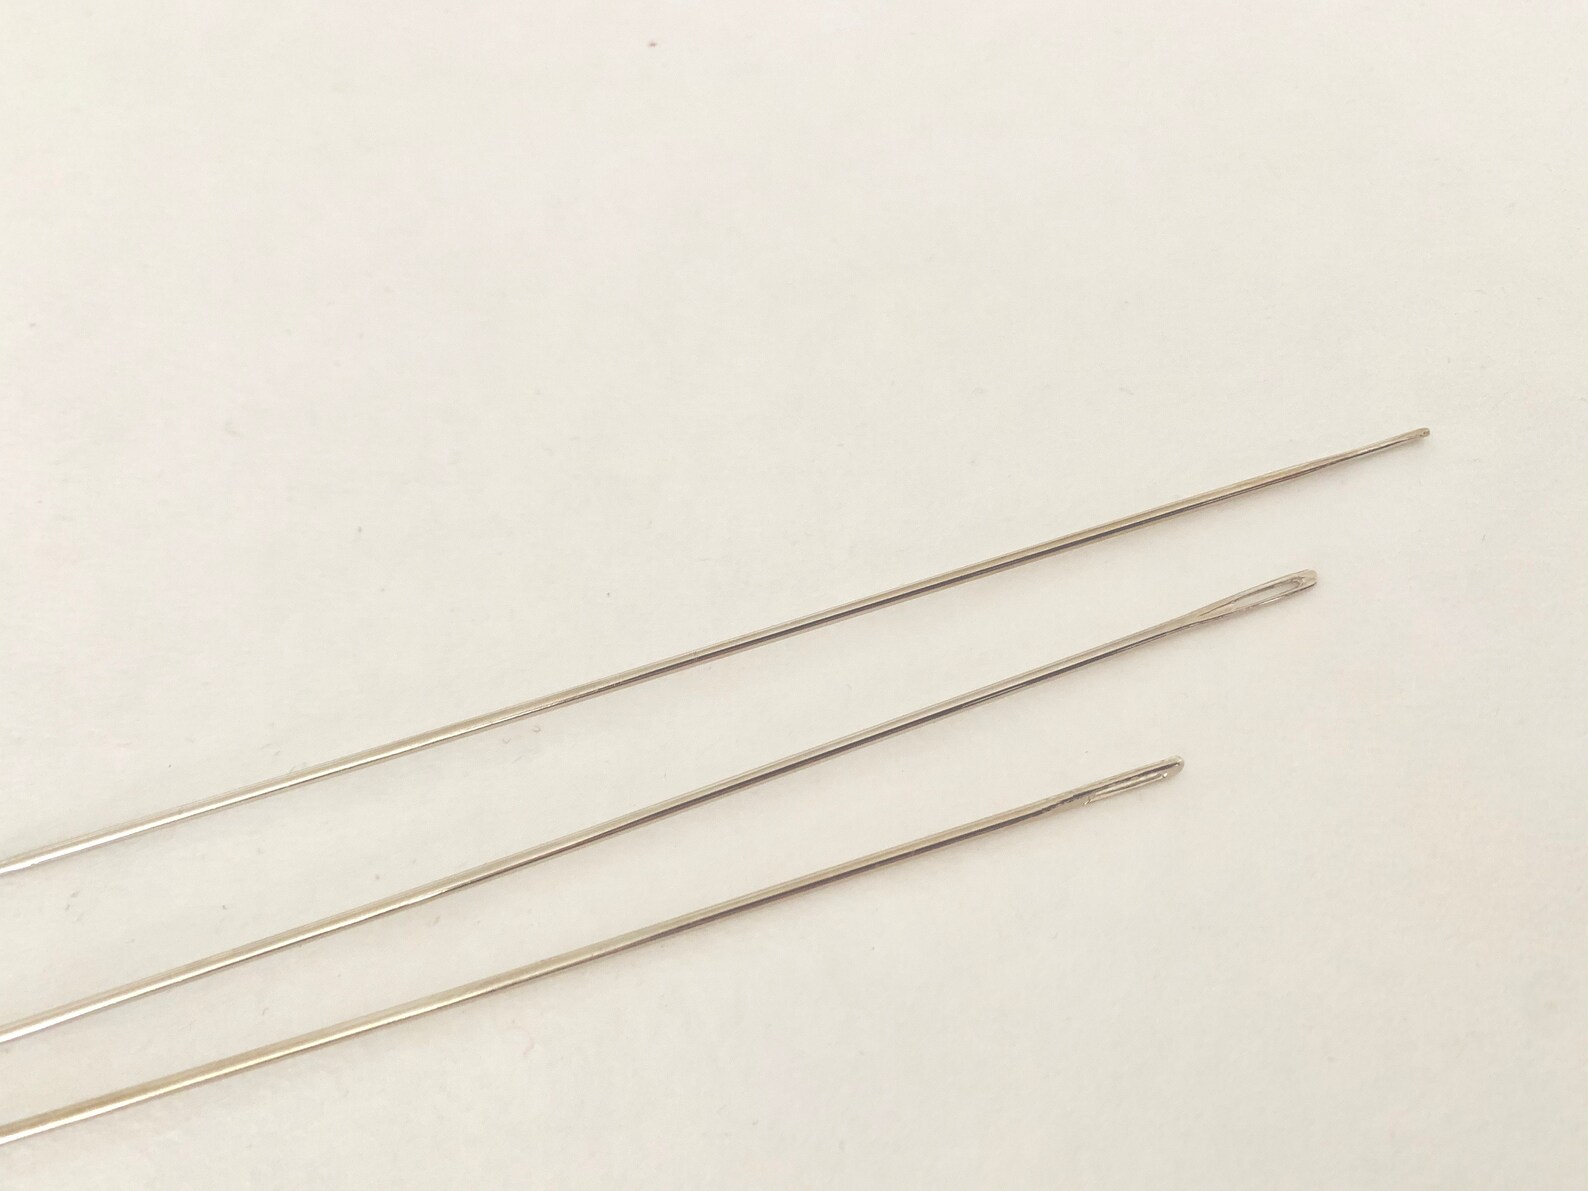 Extra Long Needle 6 // 15 Cm Long Sewing Needle // Plush | Etsy